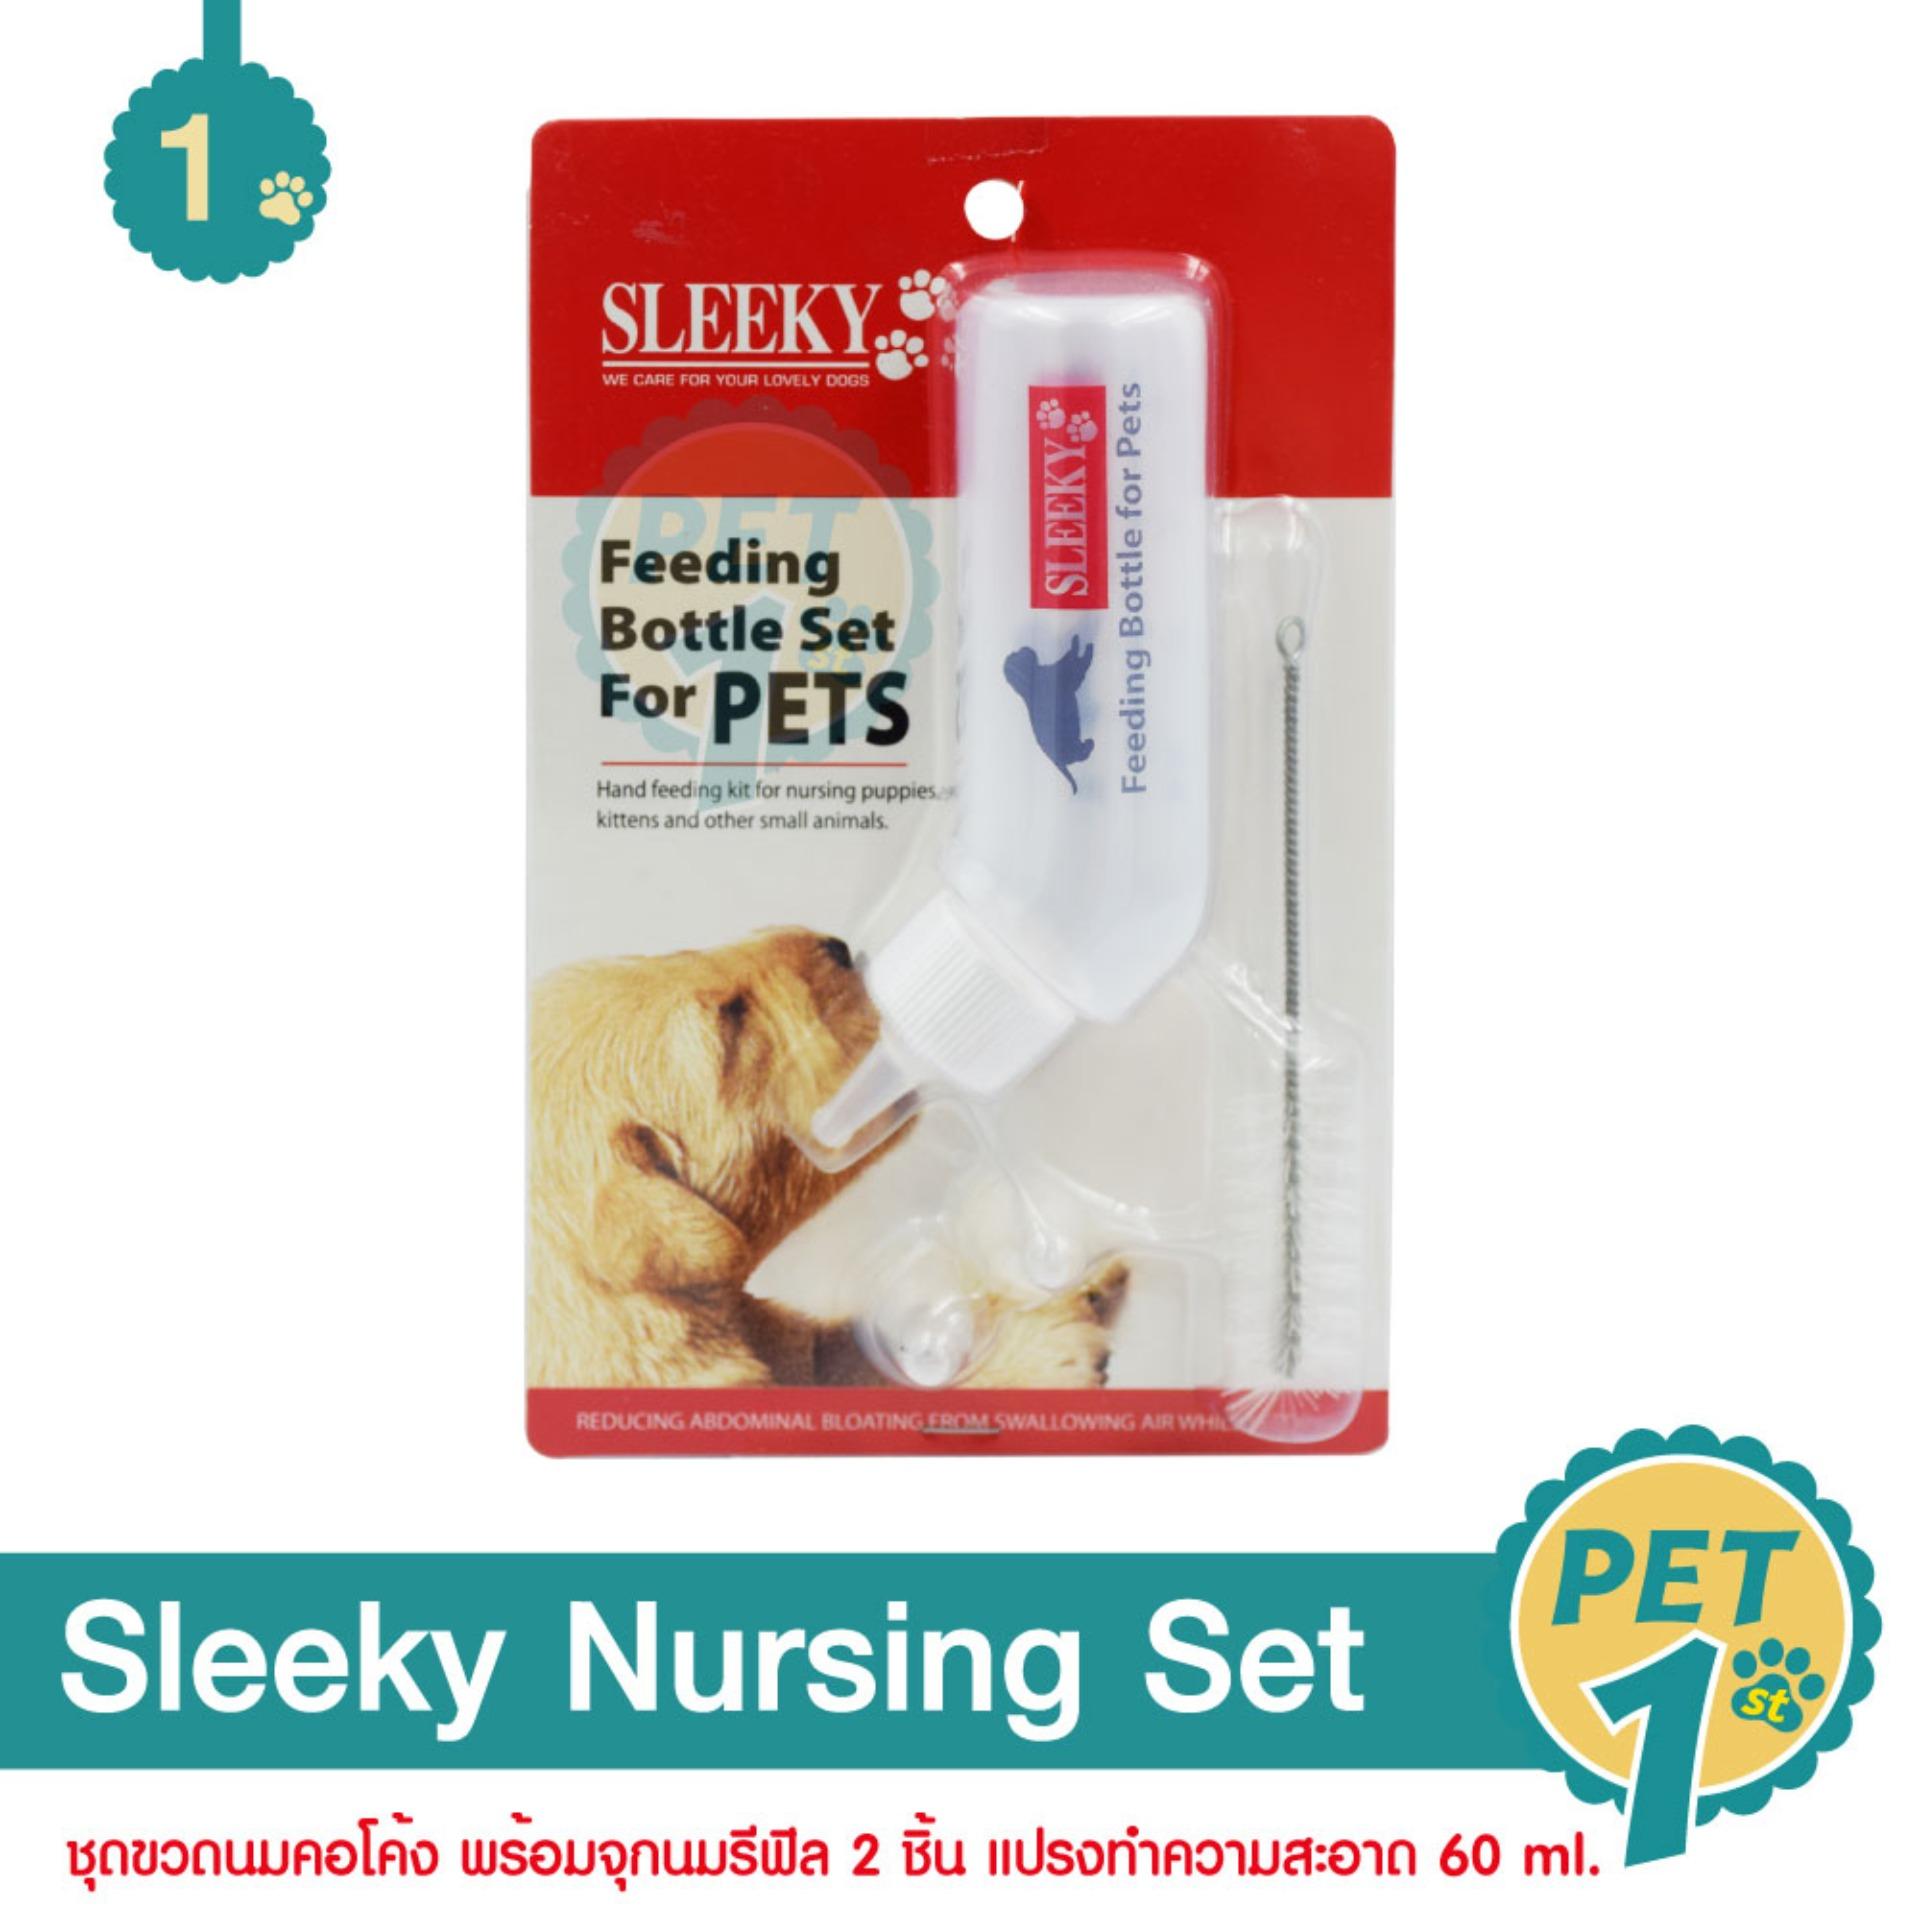 Sleeky Nursing Set ชุดขวดนมคอโค้ง พร้อมจุกนมรีฟิล 2 ชิ้น แปรงทำความสะอาด สำหรับลูกสุนัข แมว สัตว์เลี้ยงเล็ก ขนาด 60 ml.